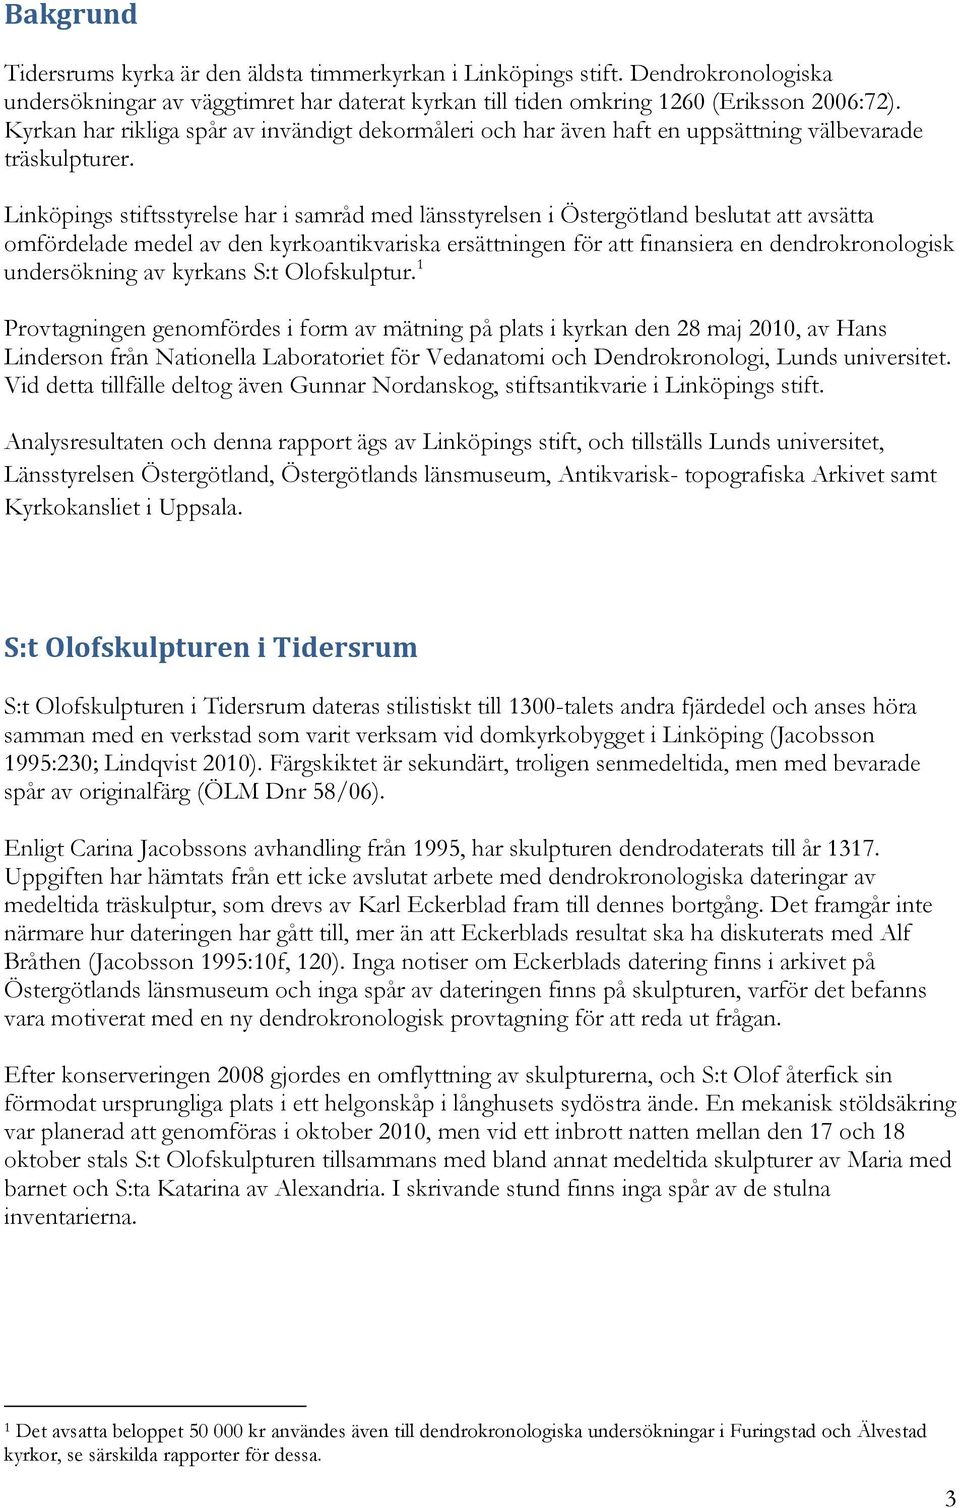 Linköpings stiftsstyrelse har i samråd med länsstyrelsen i Östergötland beslutat att avsätta omfördelade medel av den kyrkoantikvariska ersättningen för att finansiera en dendrokronologisk